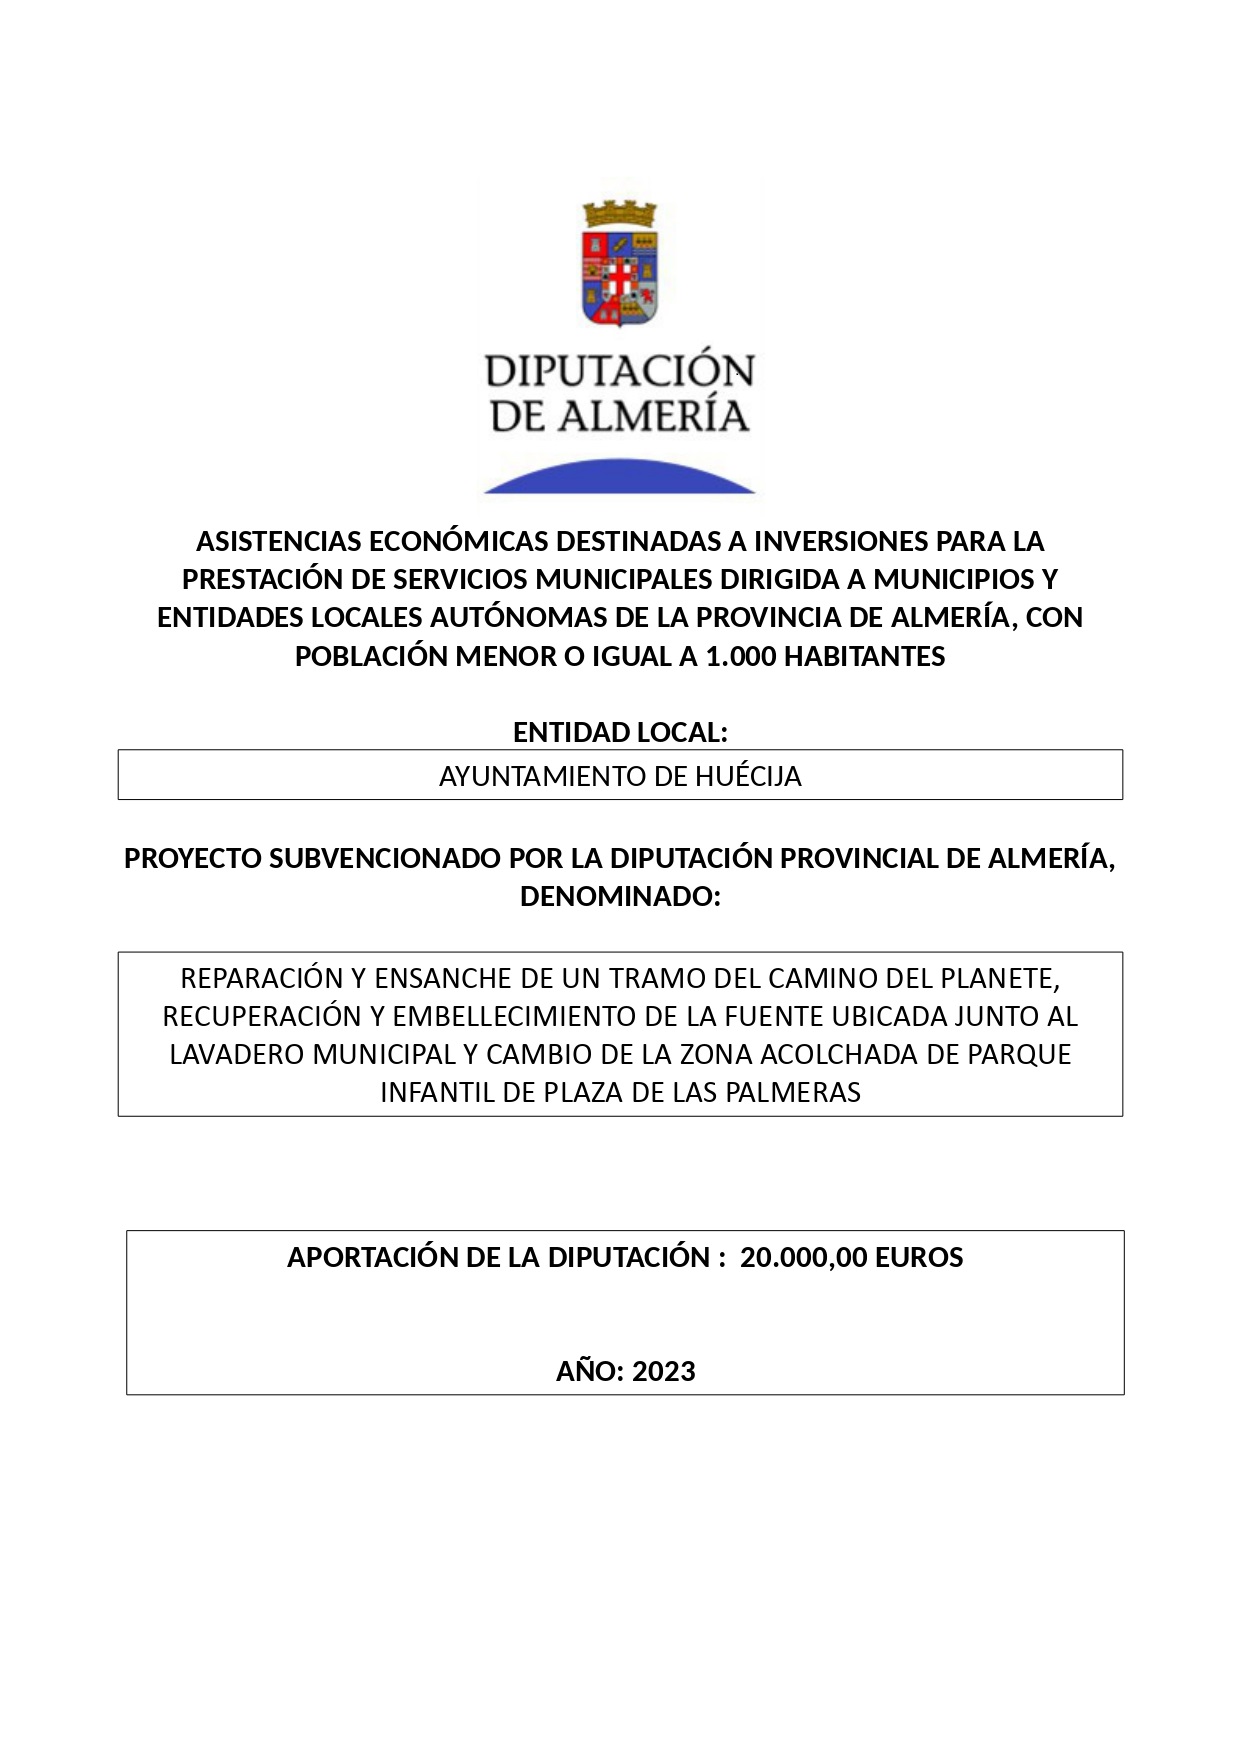 ASISTENCIA ECONOMICA DE LA EXCMA. DIPUTACION DE ALMERÍA PARA INVERSIONES MUNICIPALES